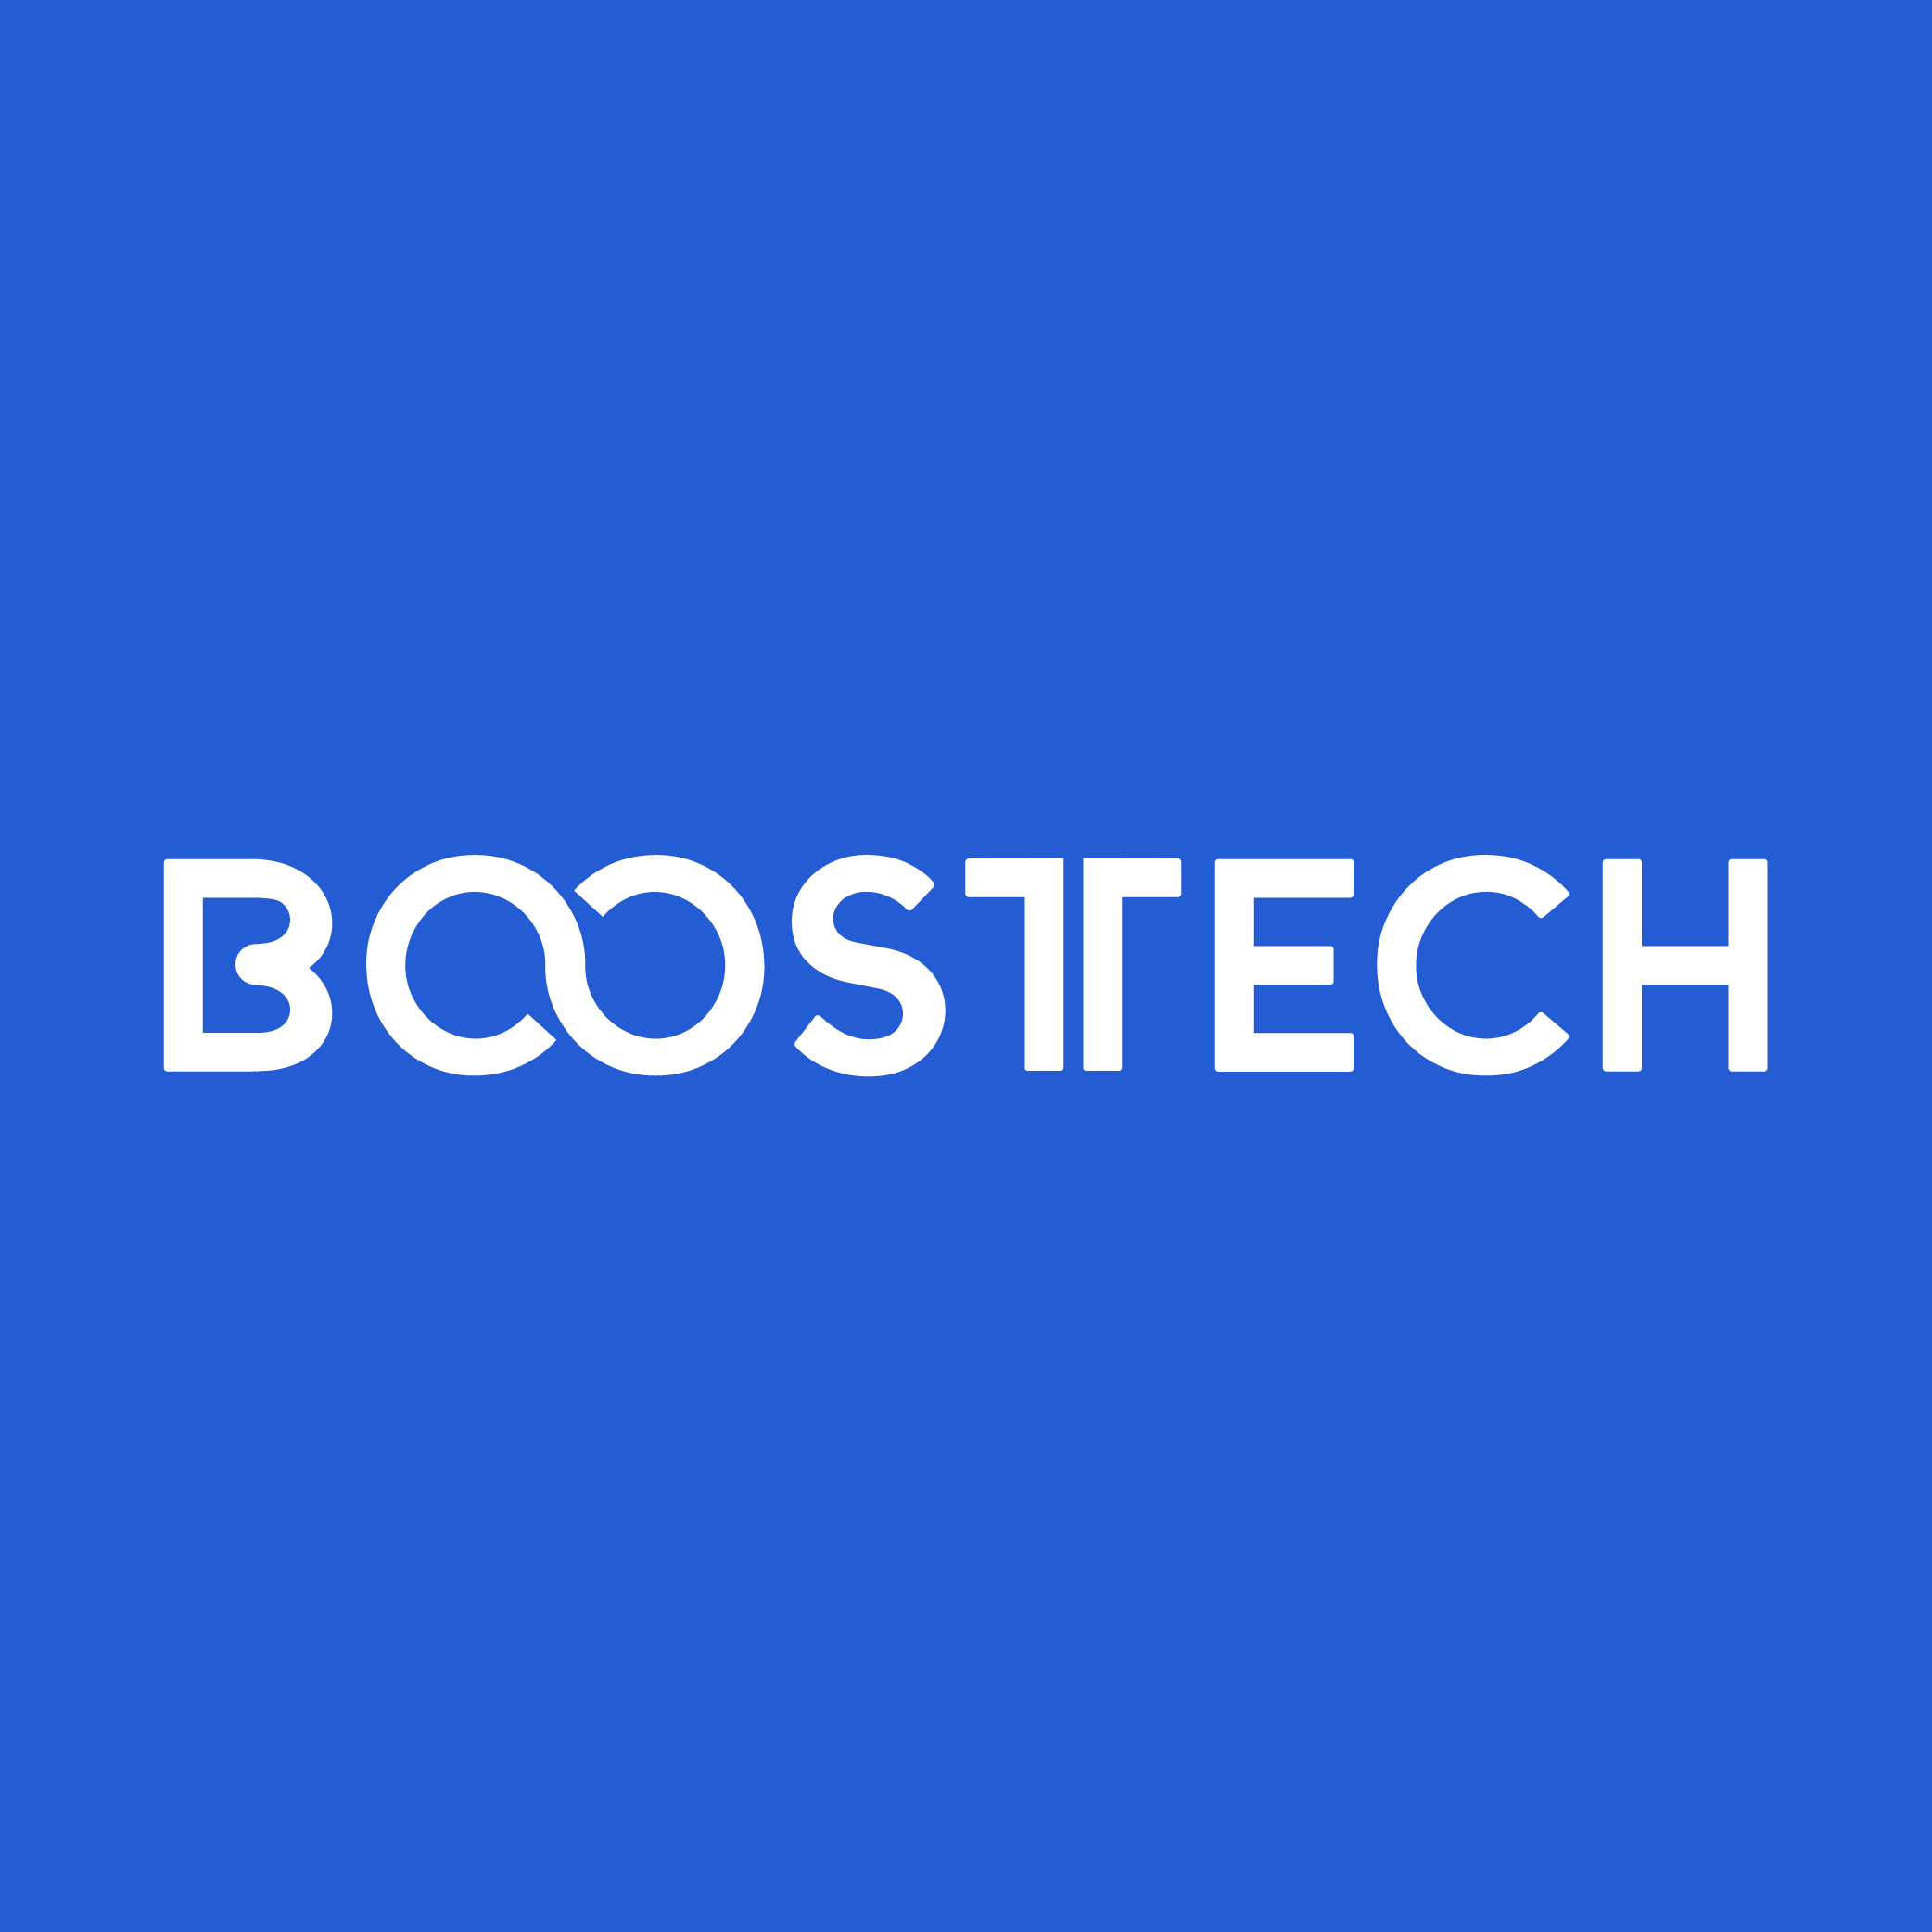 Boostech, es la solución tecnológica para toda pyme